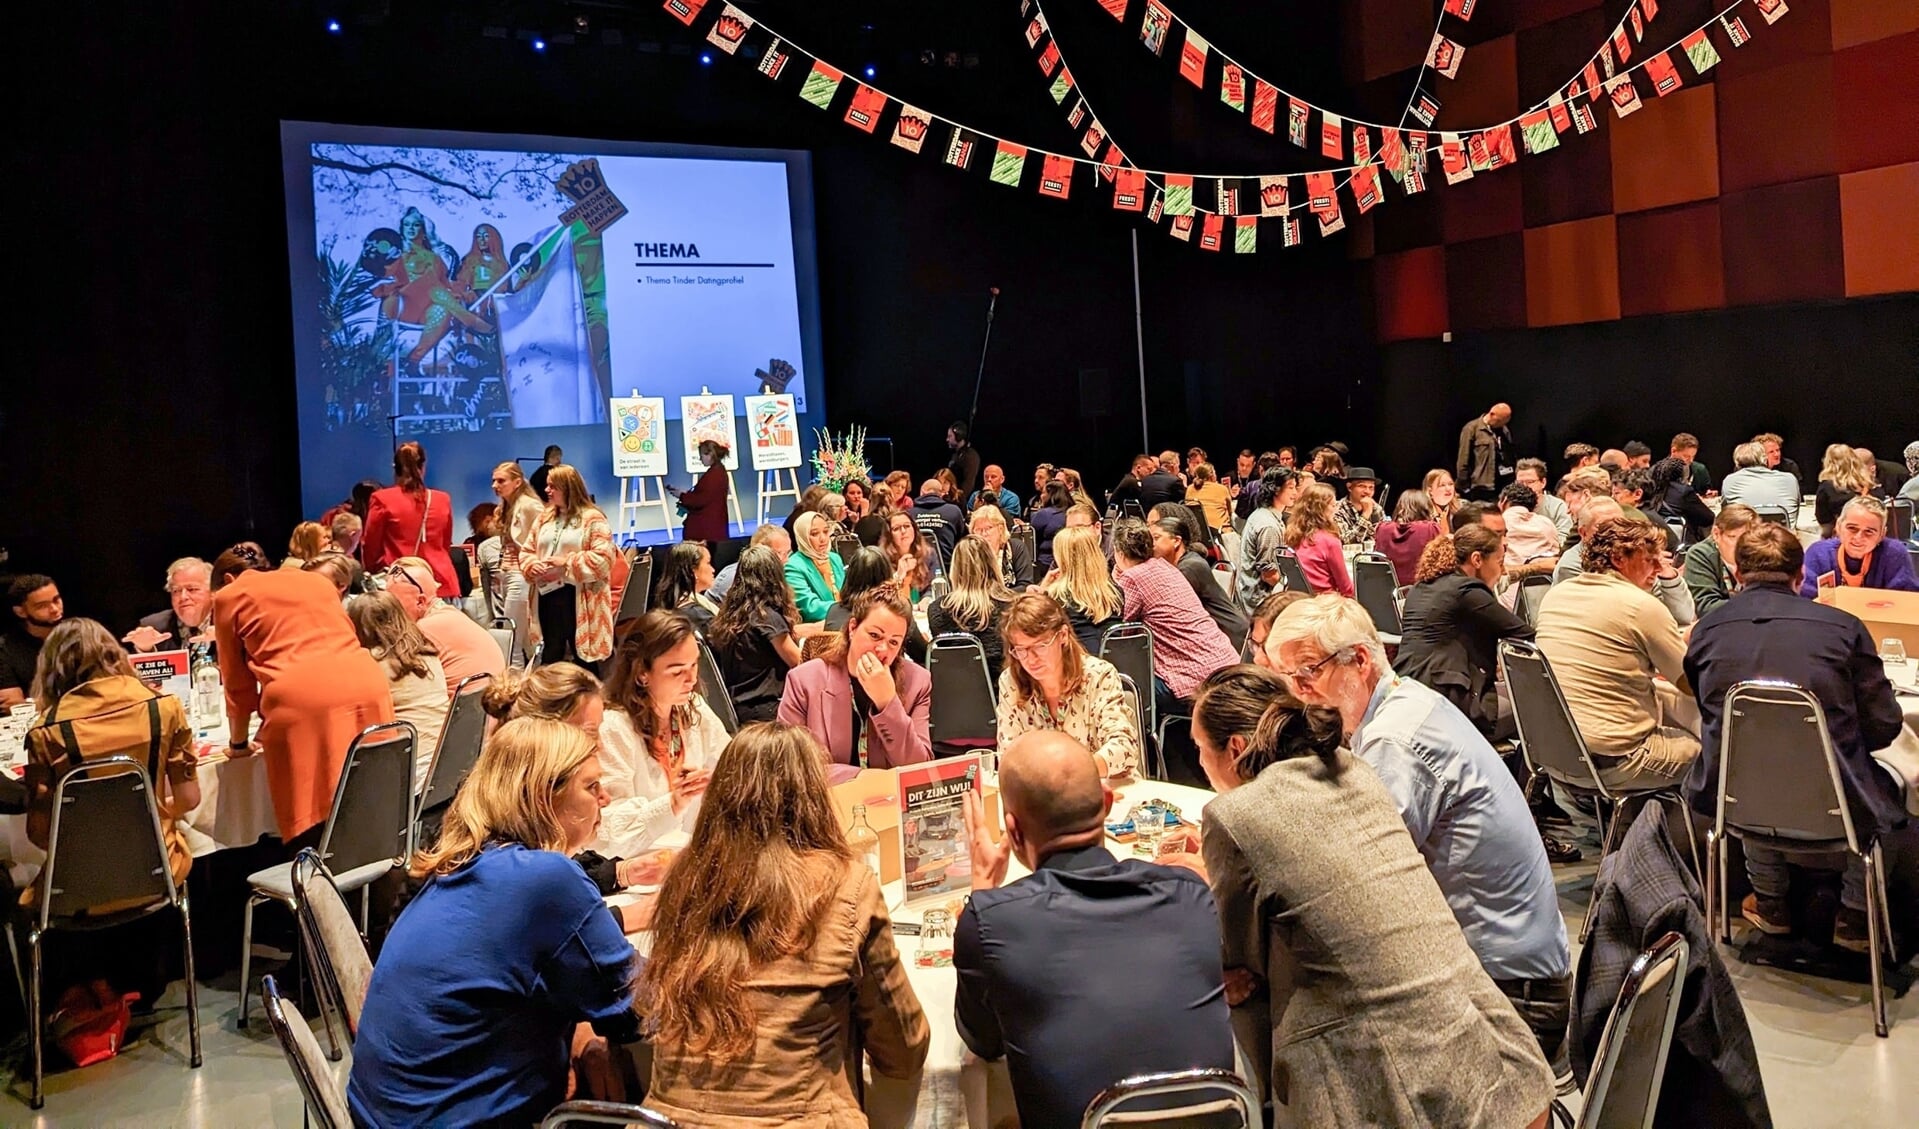 Tijdens een bijeenkomst op 10 november in LantarenVenster bespraken 100 Rotterdammers aan 10 tafels het programma van Koningsdag in Rotterdam. Foto: Parisa Akbarzadehpoladi